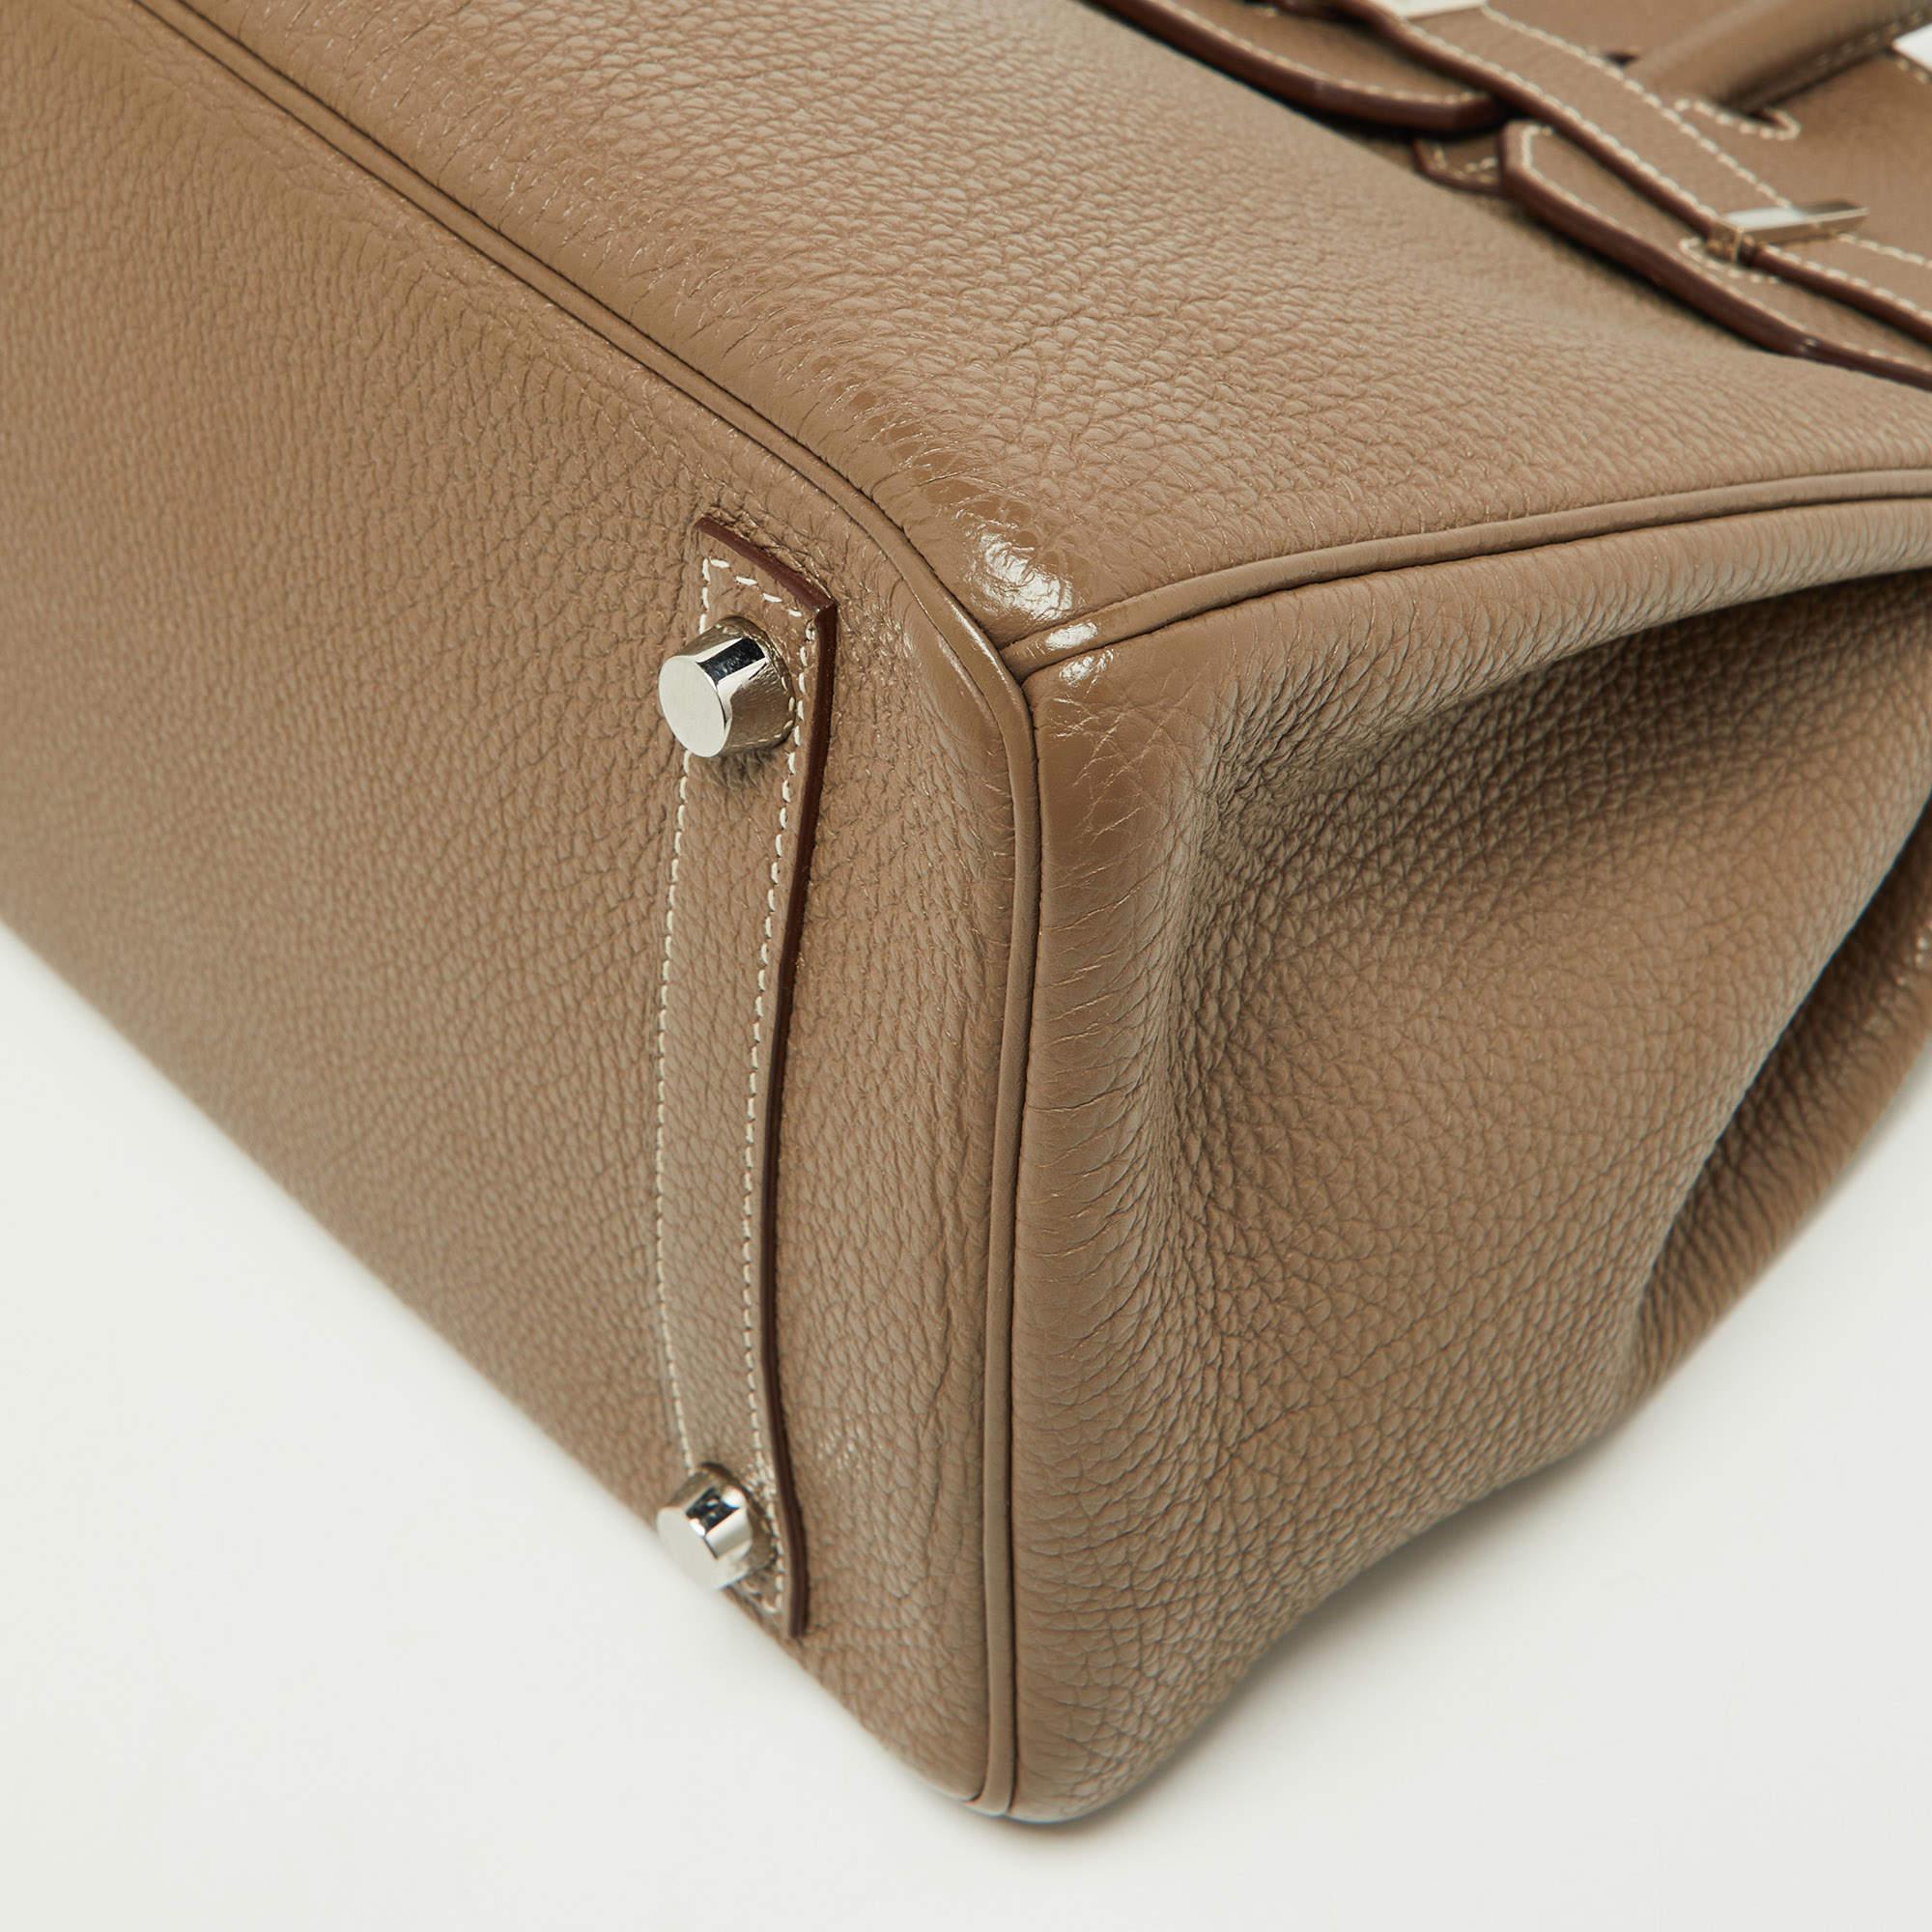 Hermes Etoupe Togo Leather Palladium Finish Birkin 30 Bag For Sale 5